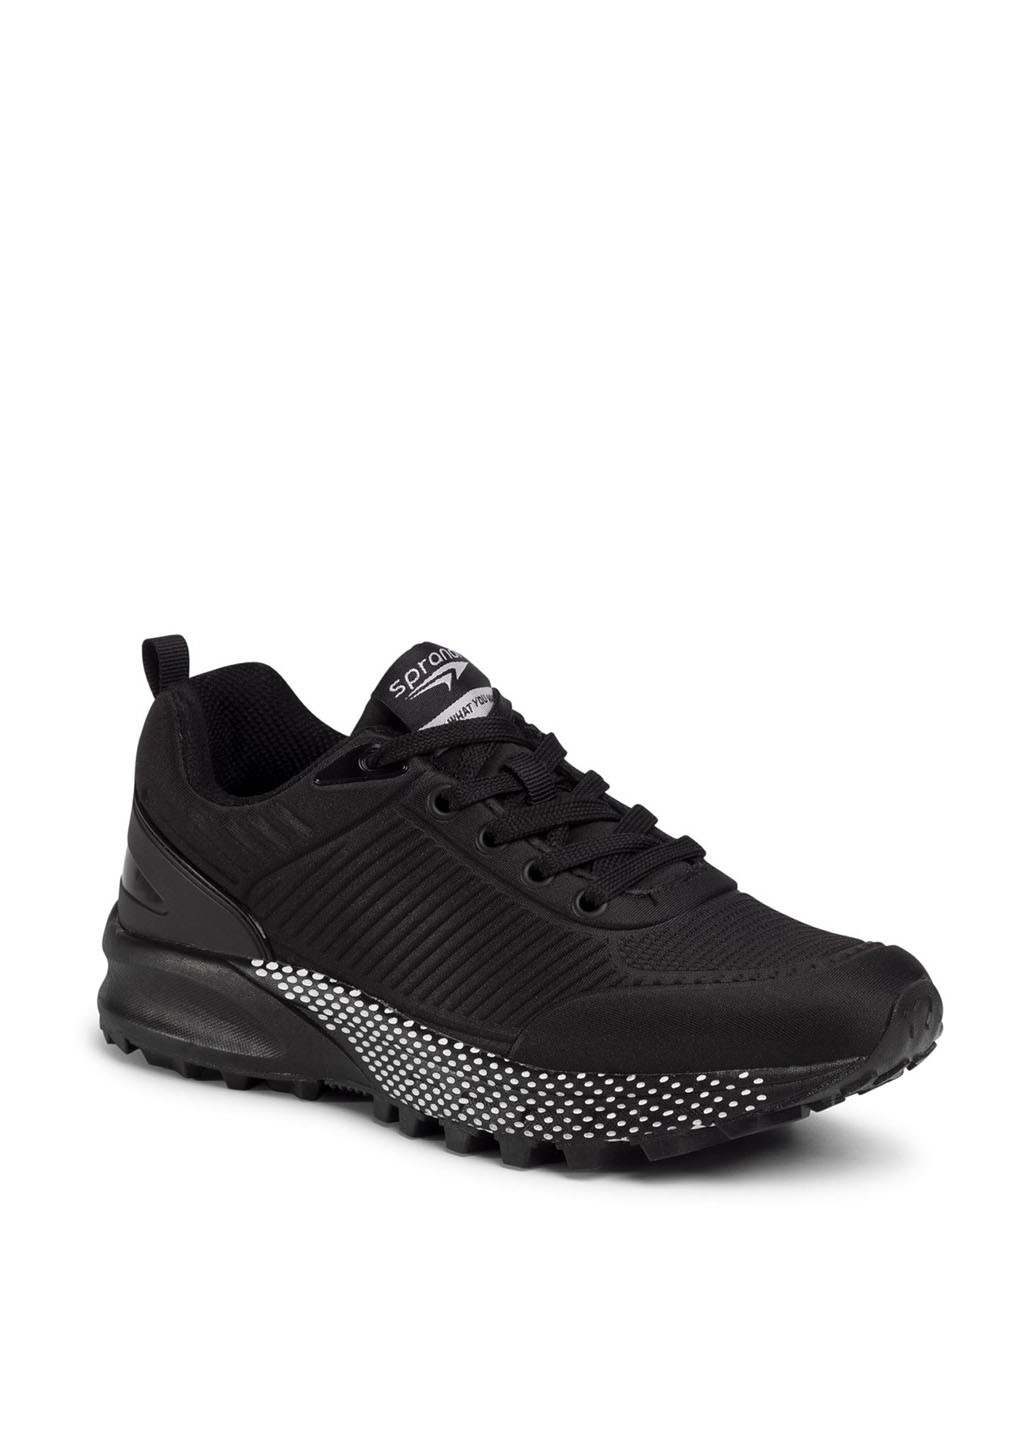 Черные демисезонные кросівки Sprandi WP07-91249-01